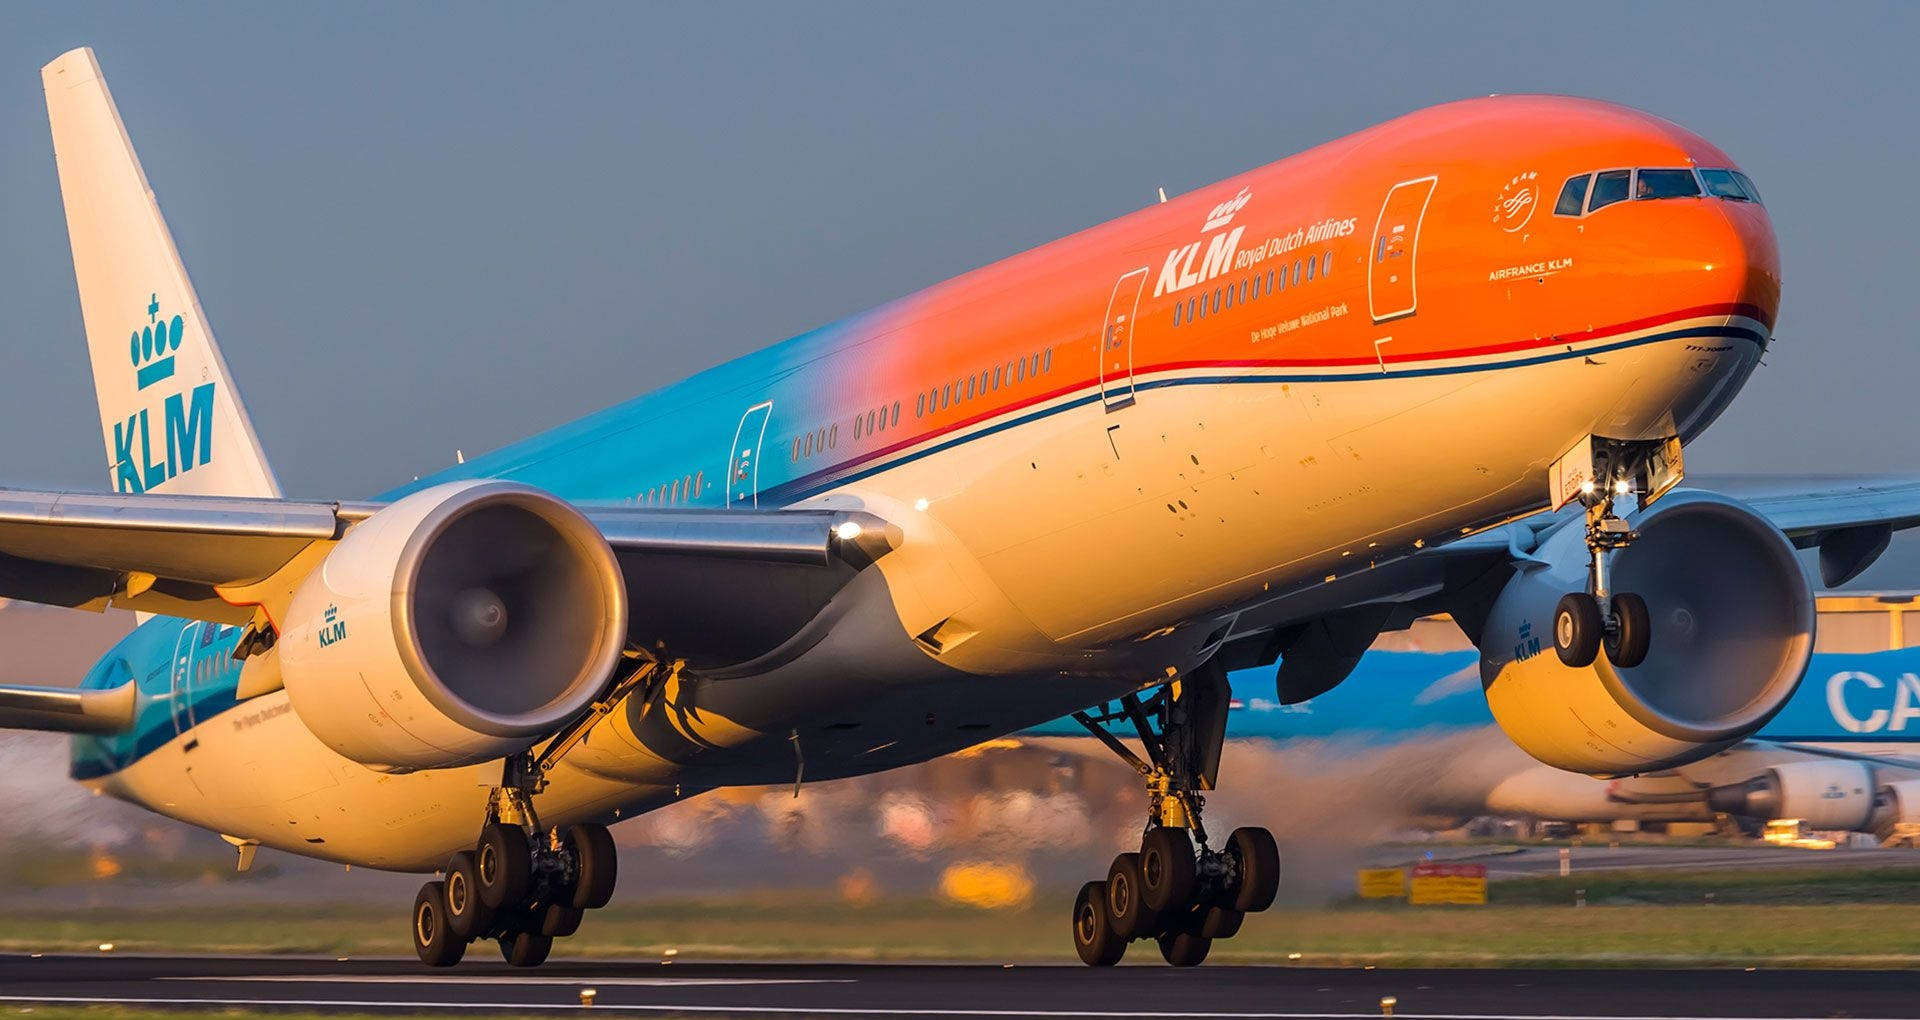 Tag et skud af KLM Orange stolthed fly Wallpaper